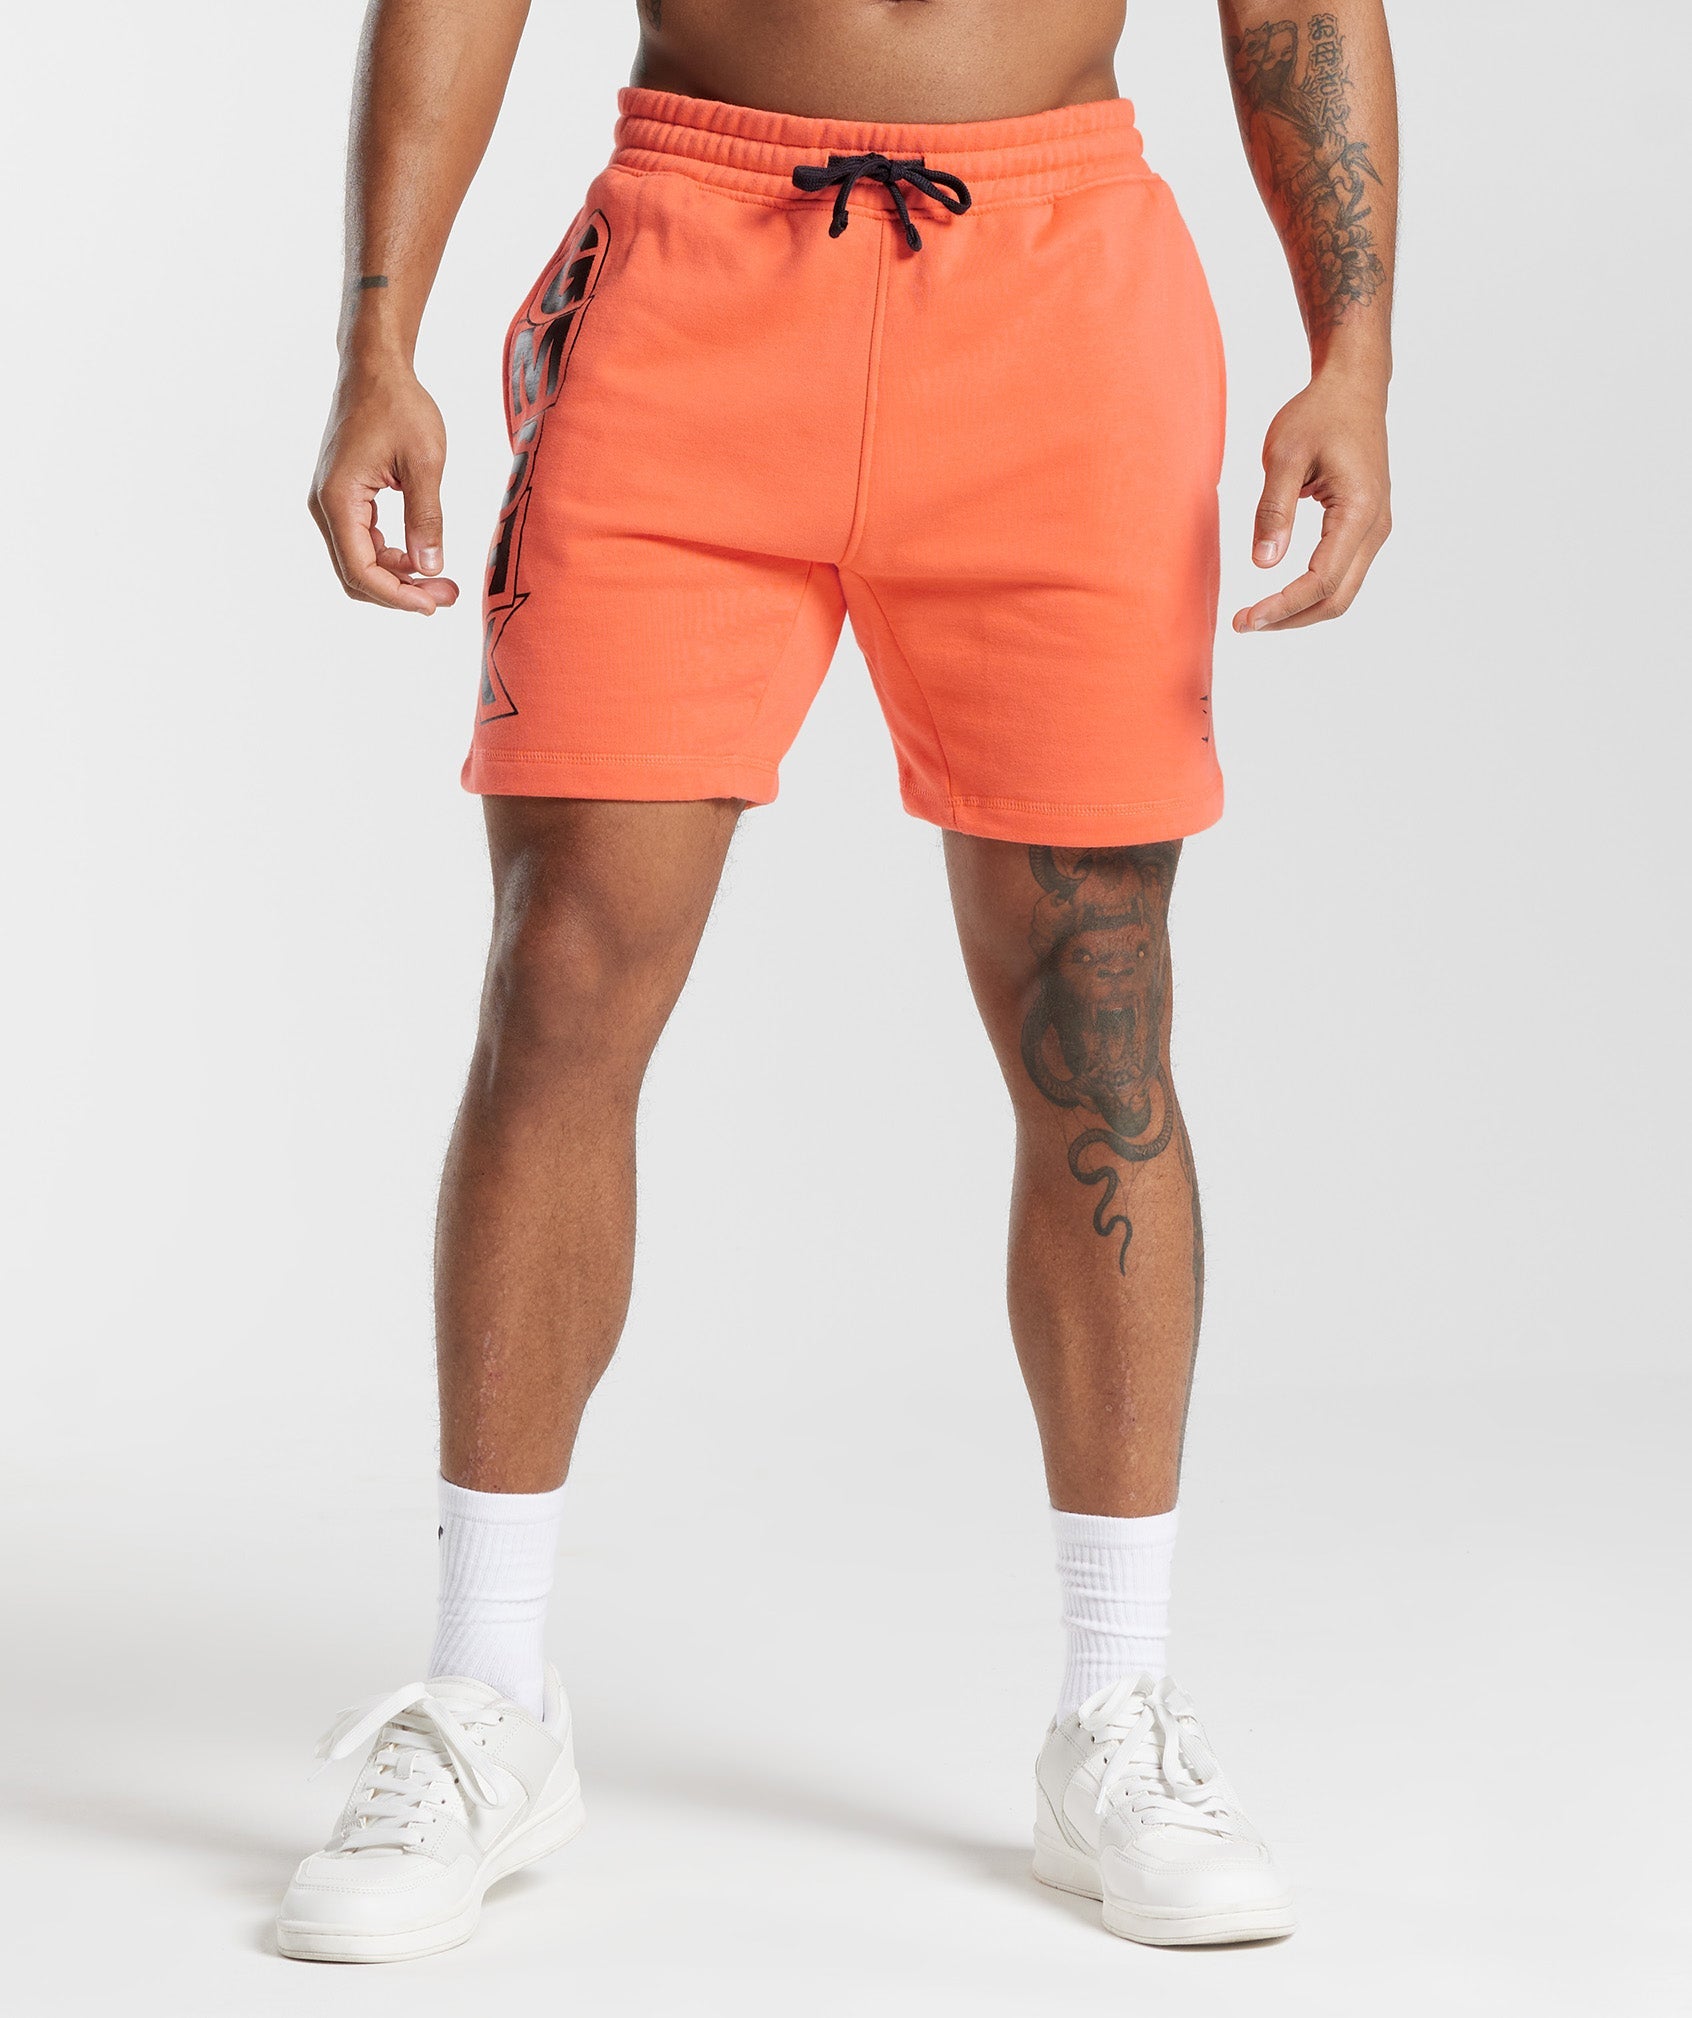 GMSHK Shorts in Solstice Orange